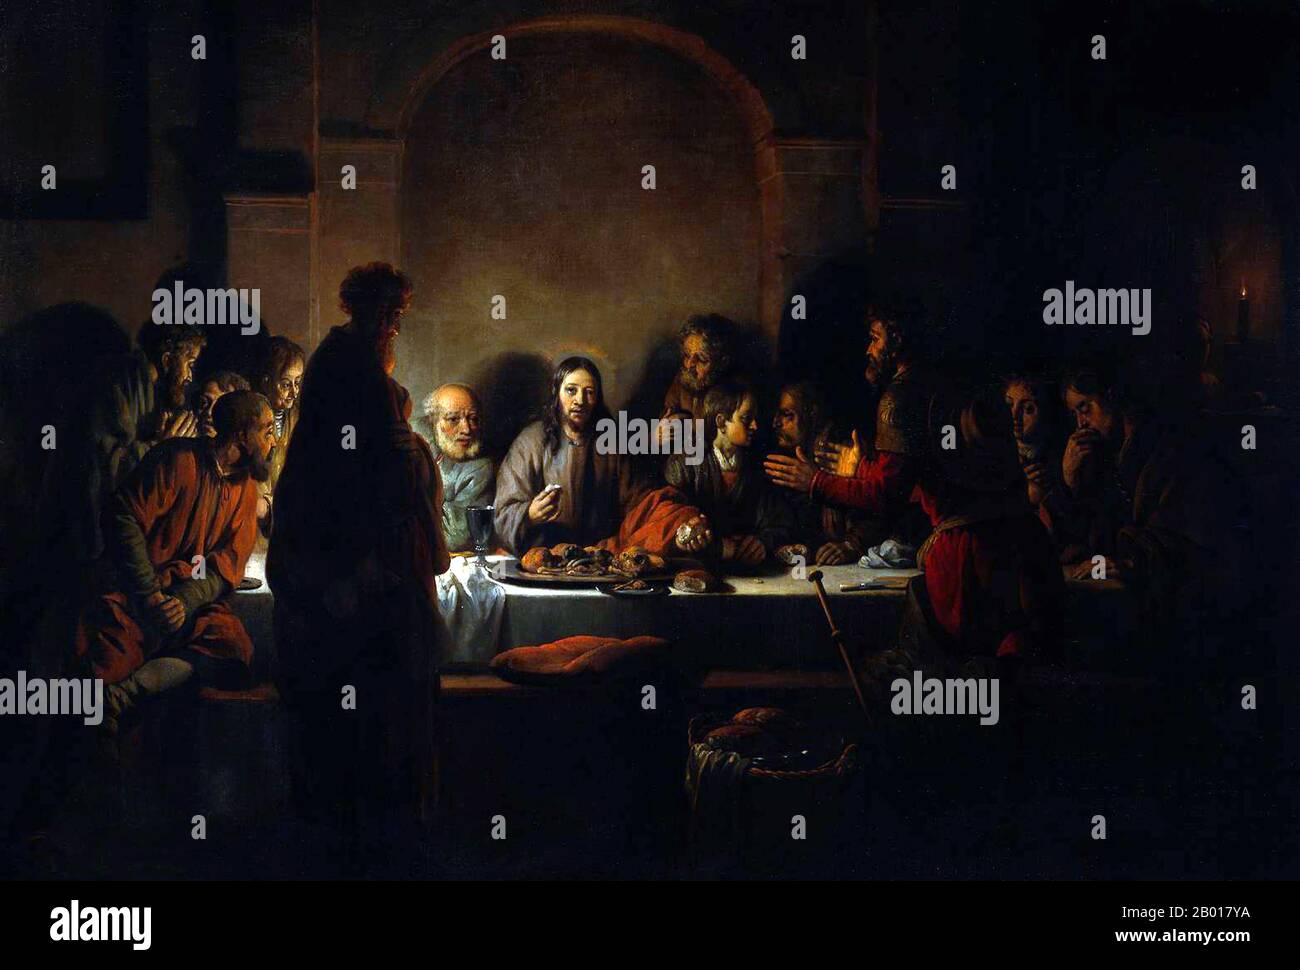 Paesi Bassi: 'L'ultima cena'. Dipinto a olio su tela di Gerbrand van den Eeckhout (19 agosto 1621 - 29 settembre 1674), 1664. Van den Eeckhout era uno studente di Rembrandt e, come il suo mentore, preferiva usare colori scuri e contrasti con la luce. In questo capolavoro, egli mostra Gesù Cristo al centro, illuminato da candele e da un alone. Gesù spezza il pane per condividere con i suoi discepoli che sembrano ansiosi e profondi nella discussione. Essi sono vessati perché Cristo ha appena dichiarato che uno di loro lo tradisce. Gesù sembra avere uno sguardo a Giuda, che si trova in primo piano. Foto Stock